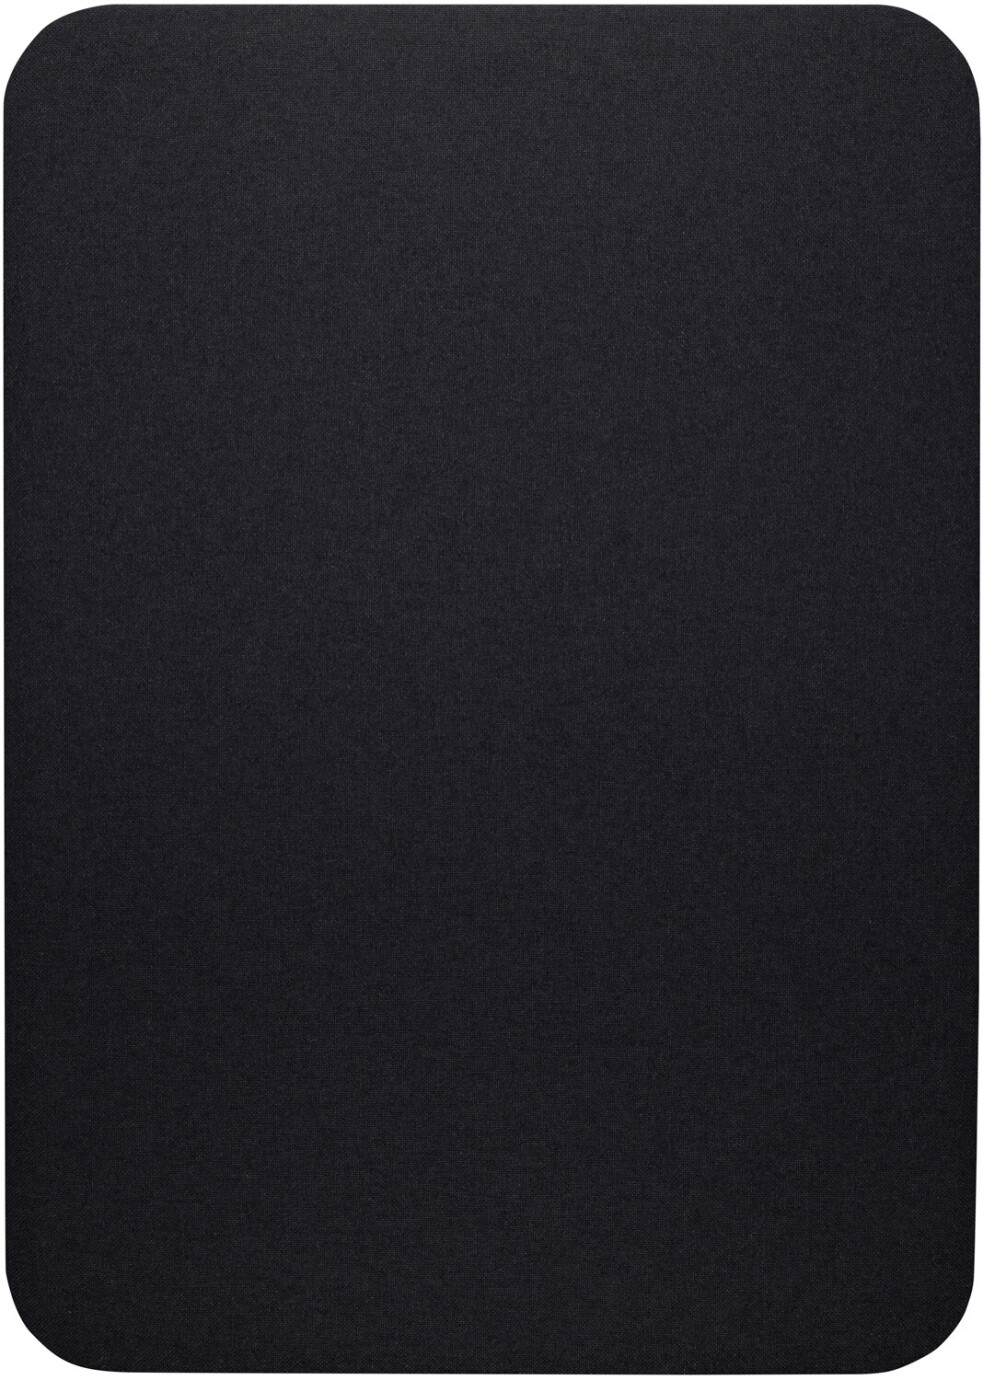 Vorschau: Artome M10 All-in-One Videokonferenzsystem, schwarz gebeizte Esche mit Stoff in Schwarz